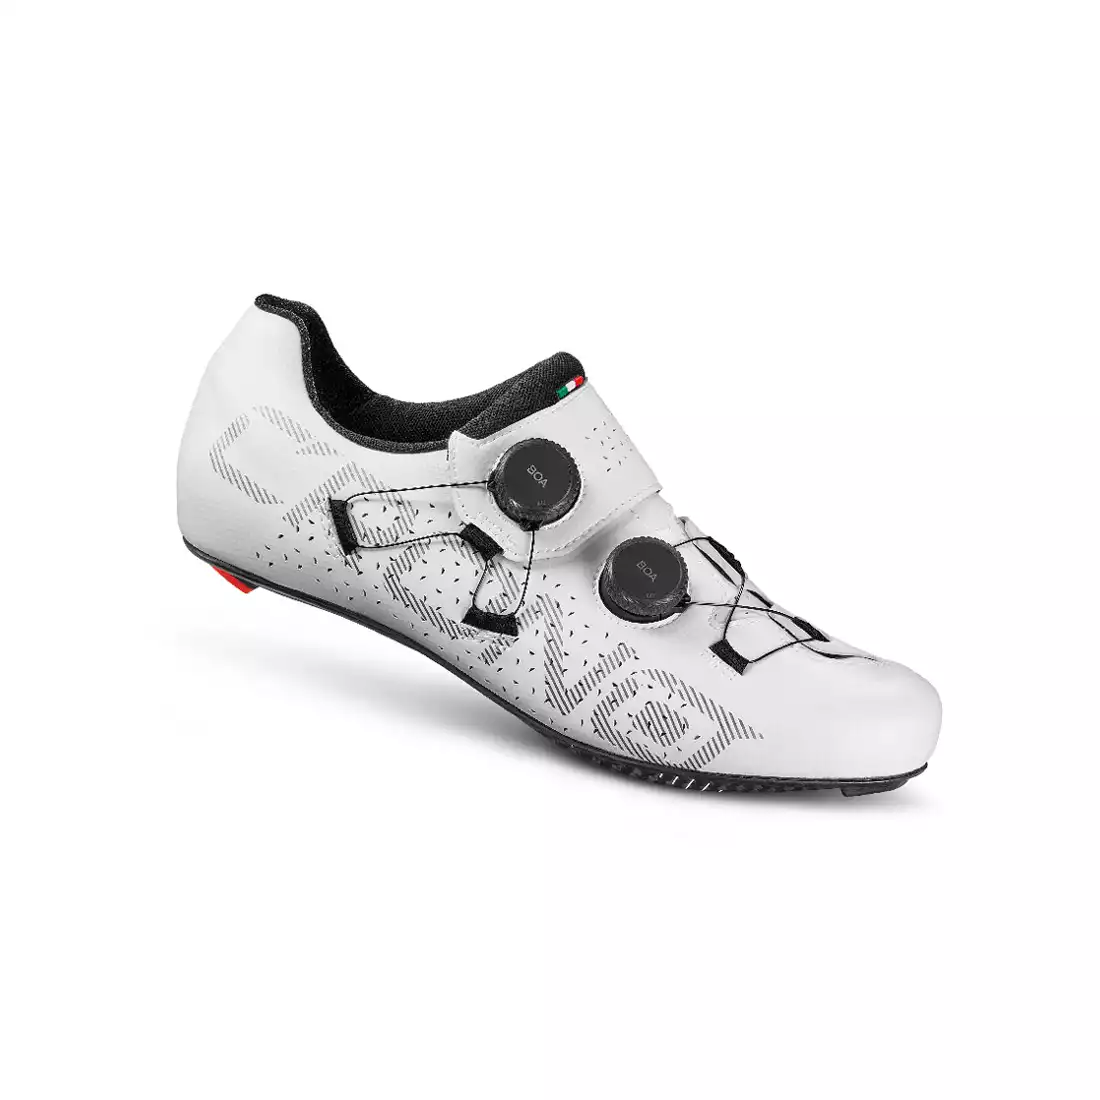 CRONO CR-1 Road bike shoes, carbon, white